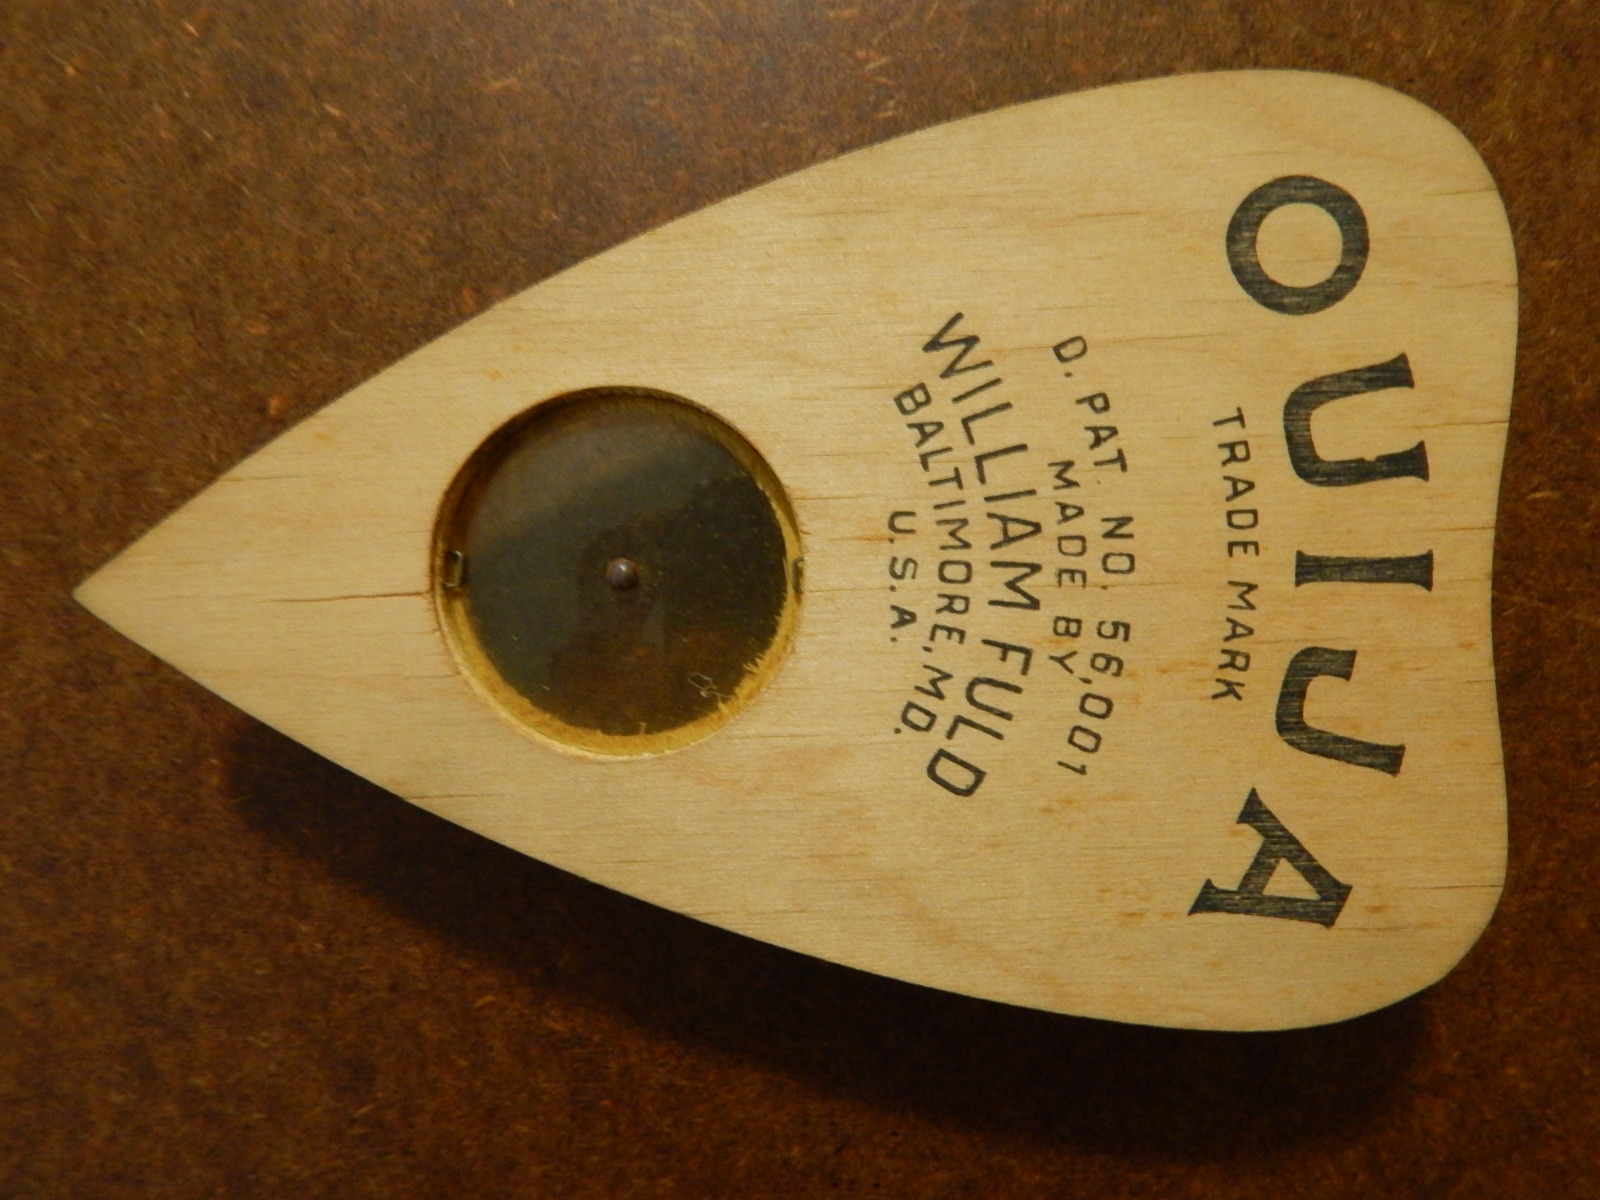 Fuld 1940s Parquet Ouija Board #OBSet 1180